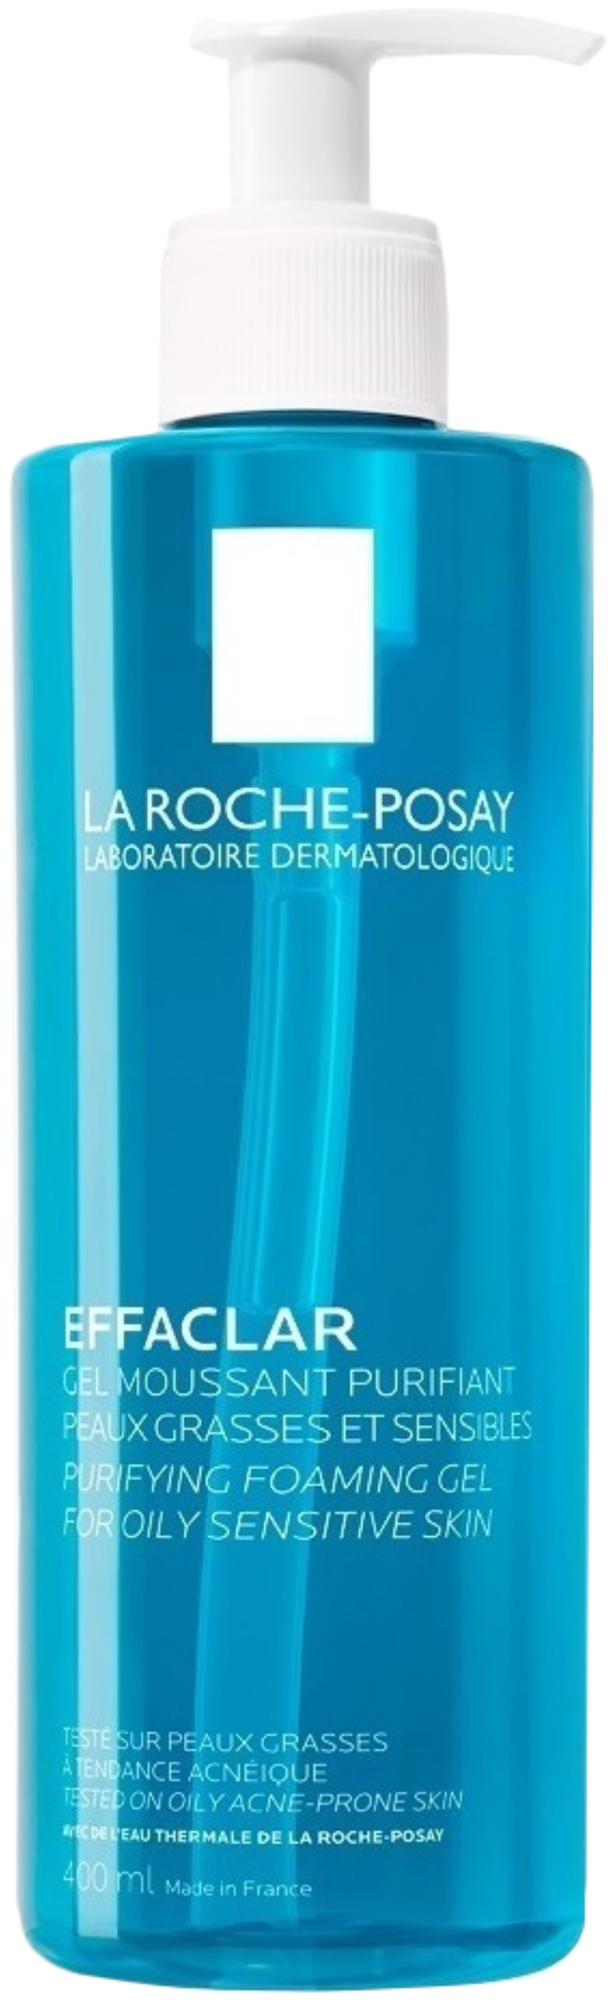 Ля-Рош Позе (La Roche-Posay) Эфаклар Очищающий Пенящийся гель 400 мл